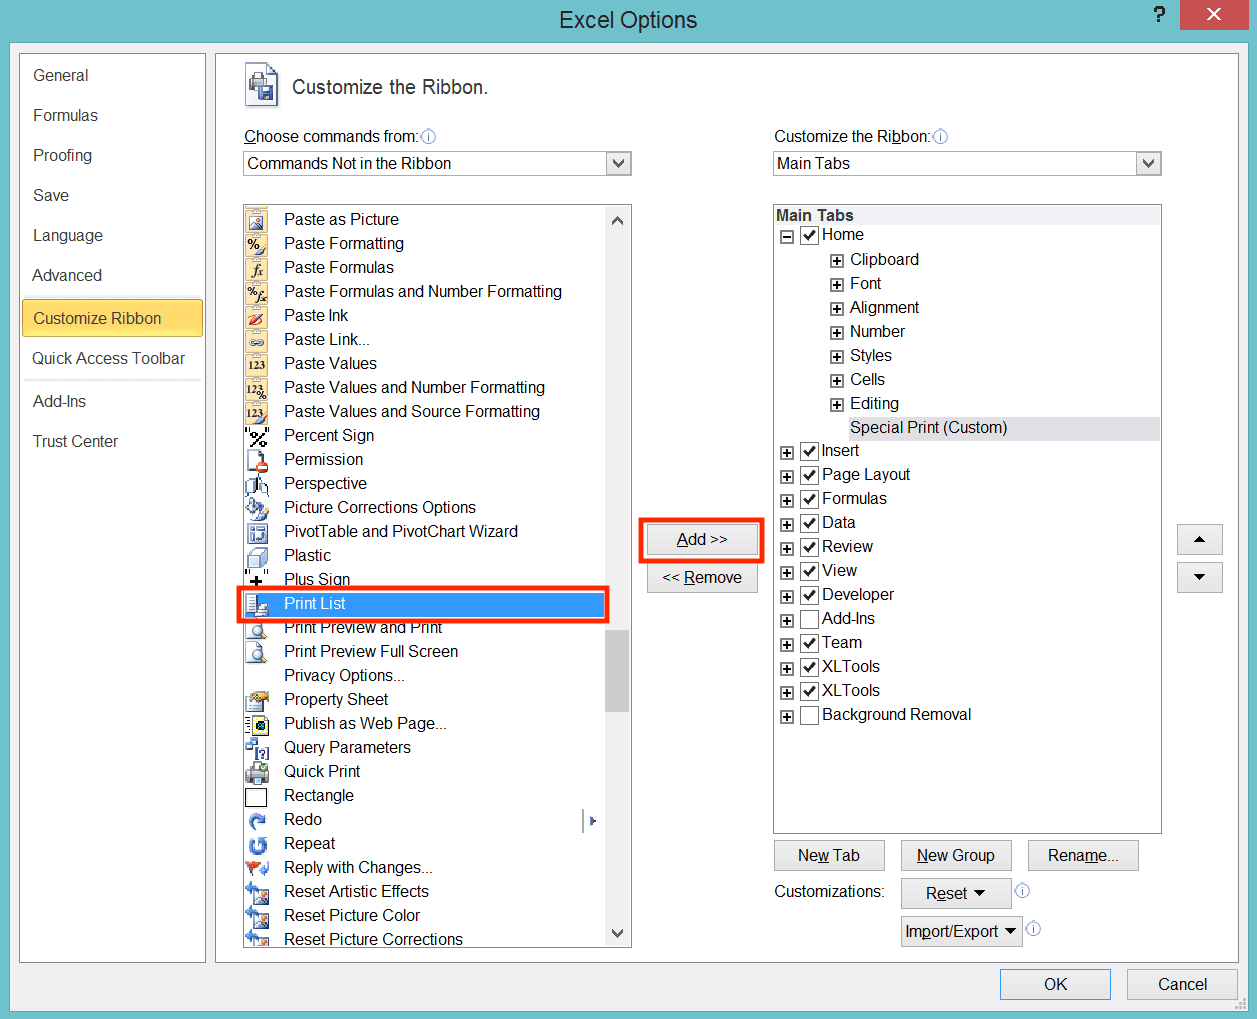 Cara Membuat Tabel di Excel - Screenshot Lokasi Tombol Print List dan Tombol Add >> di Dialog Box Customize Ribbon di Excel